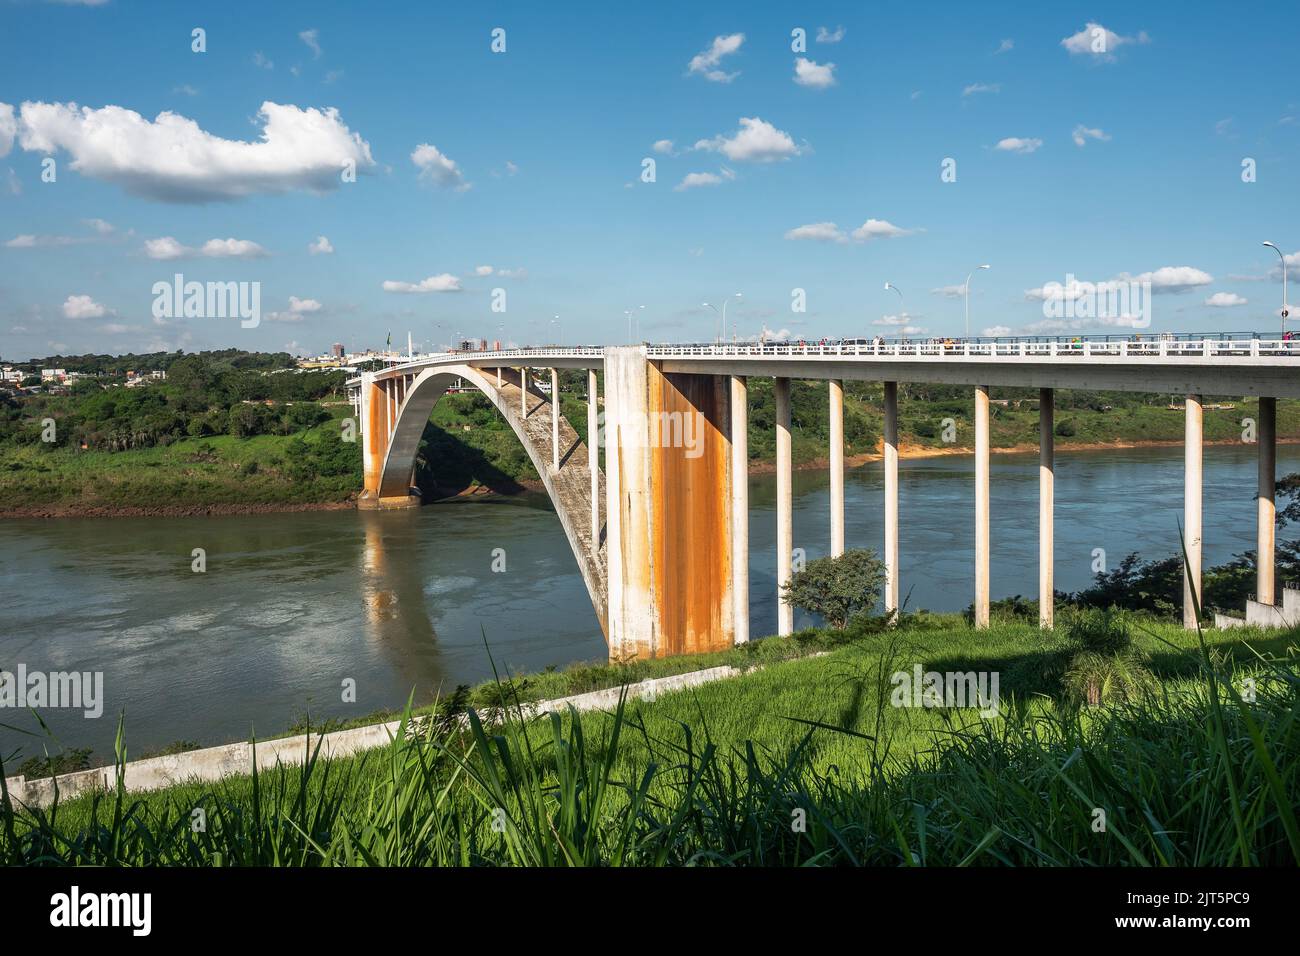 Puente de la Amistad (portugués: Ponte da Amizade) sobre el río Paraná, conectando Foz do Iguacu, Brasil, a Ciudad del Este en Paraguay. Foto de stock